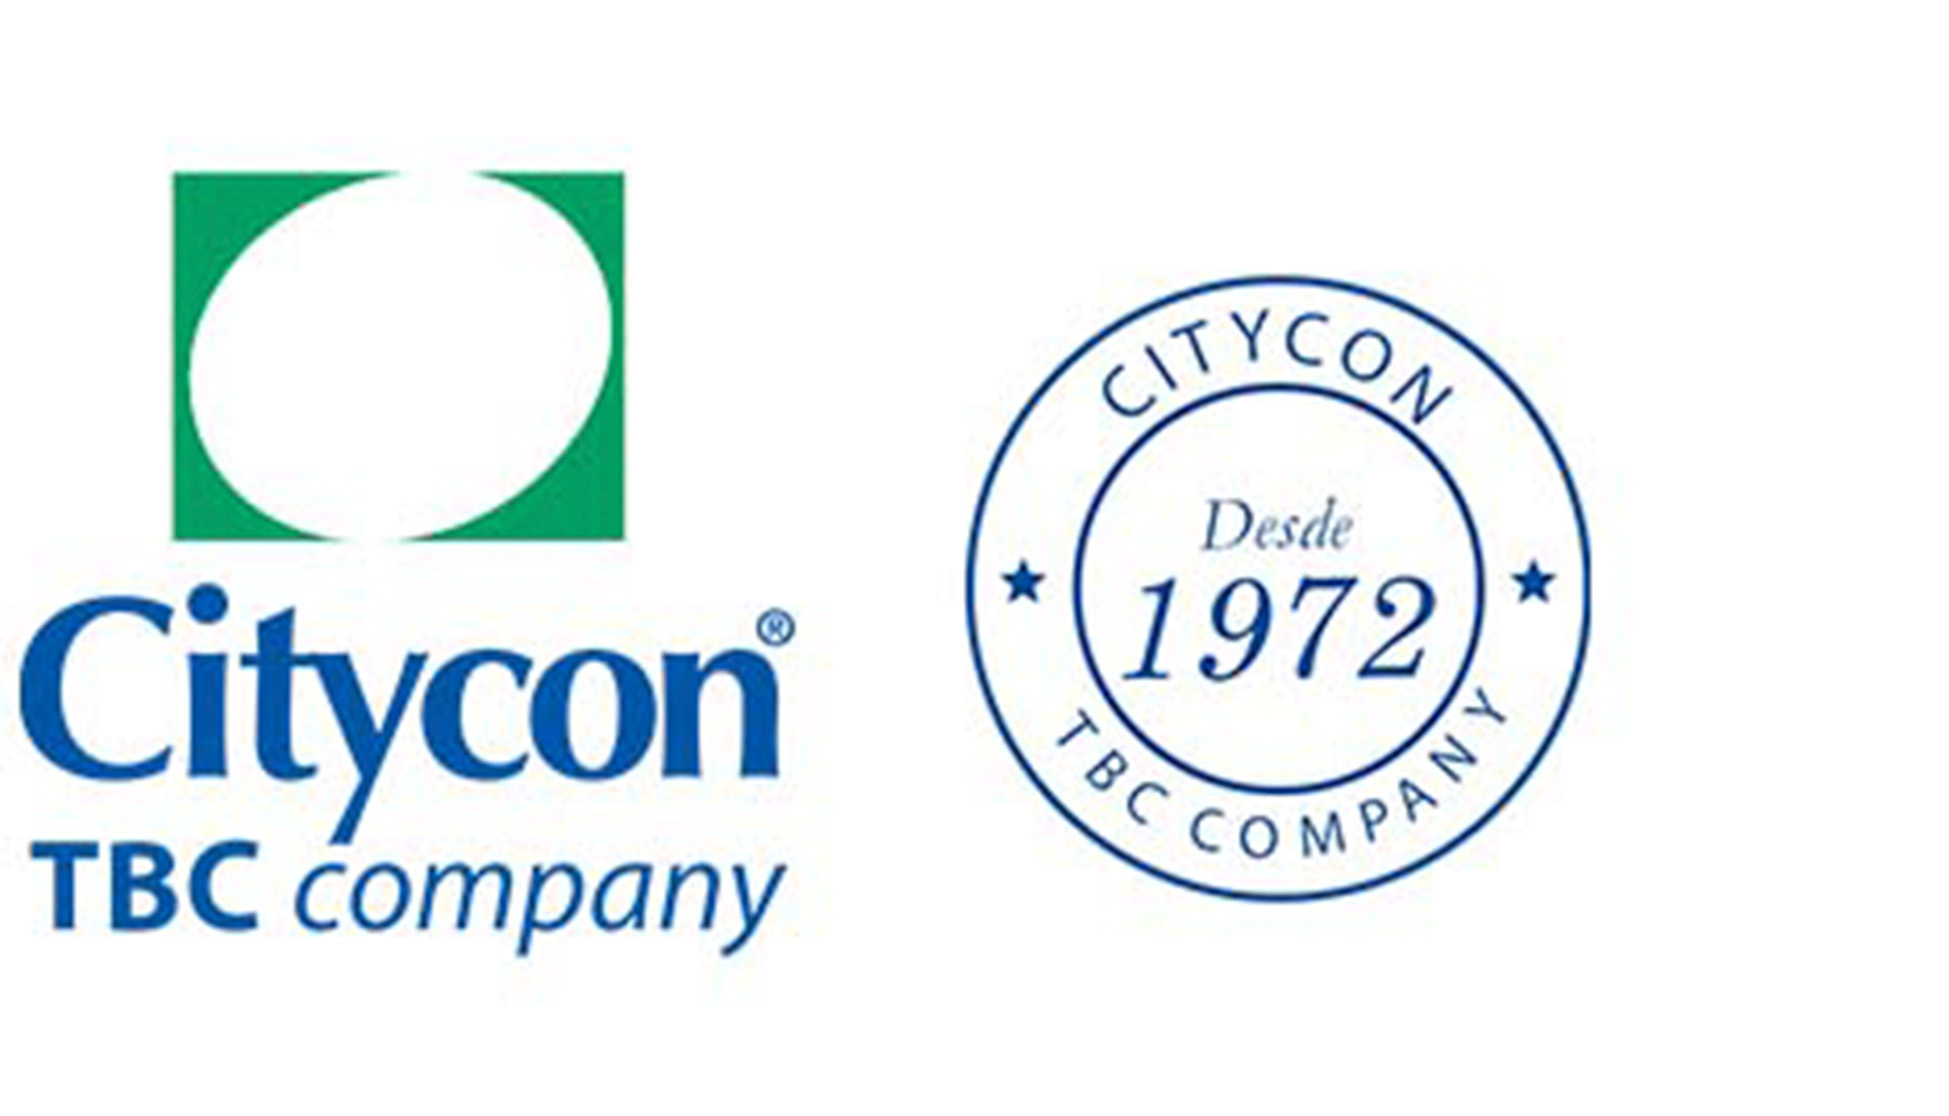 Citycon TBC company